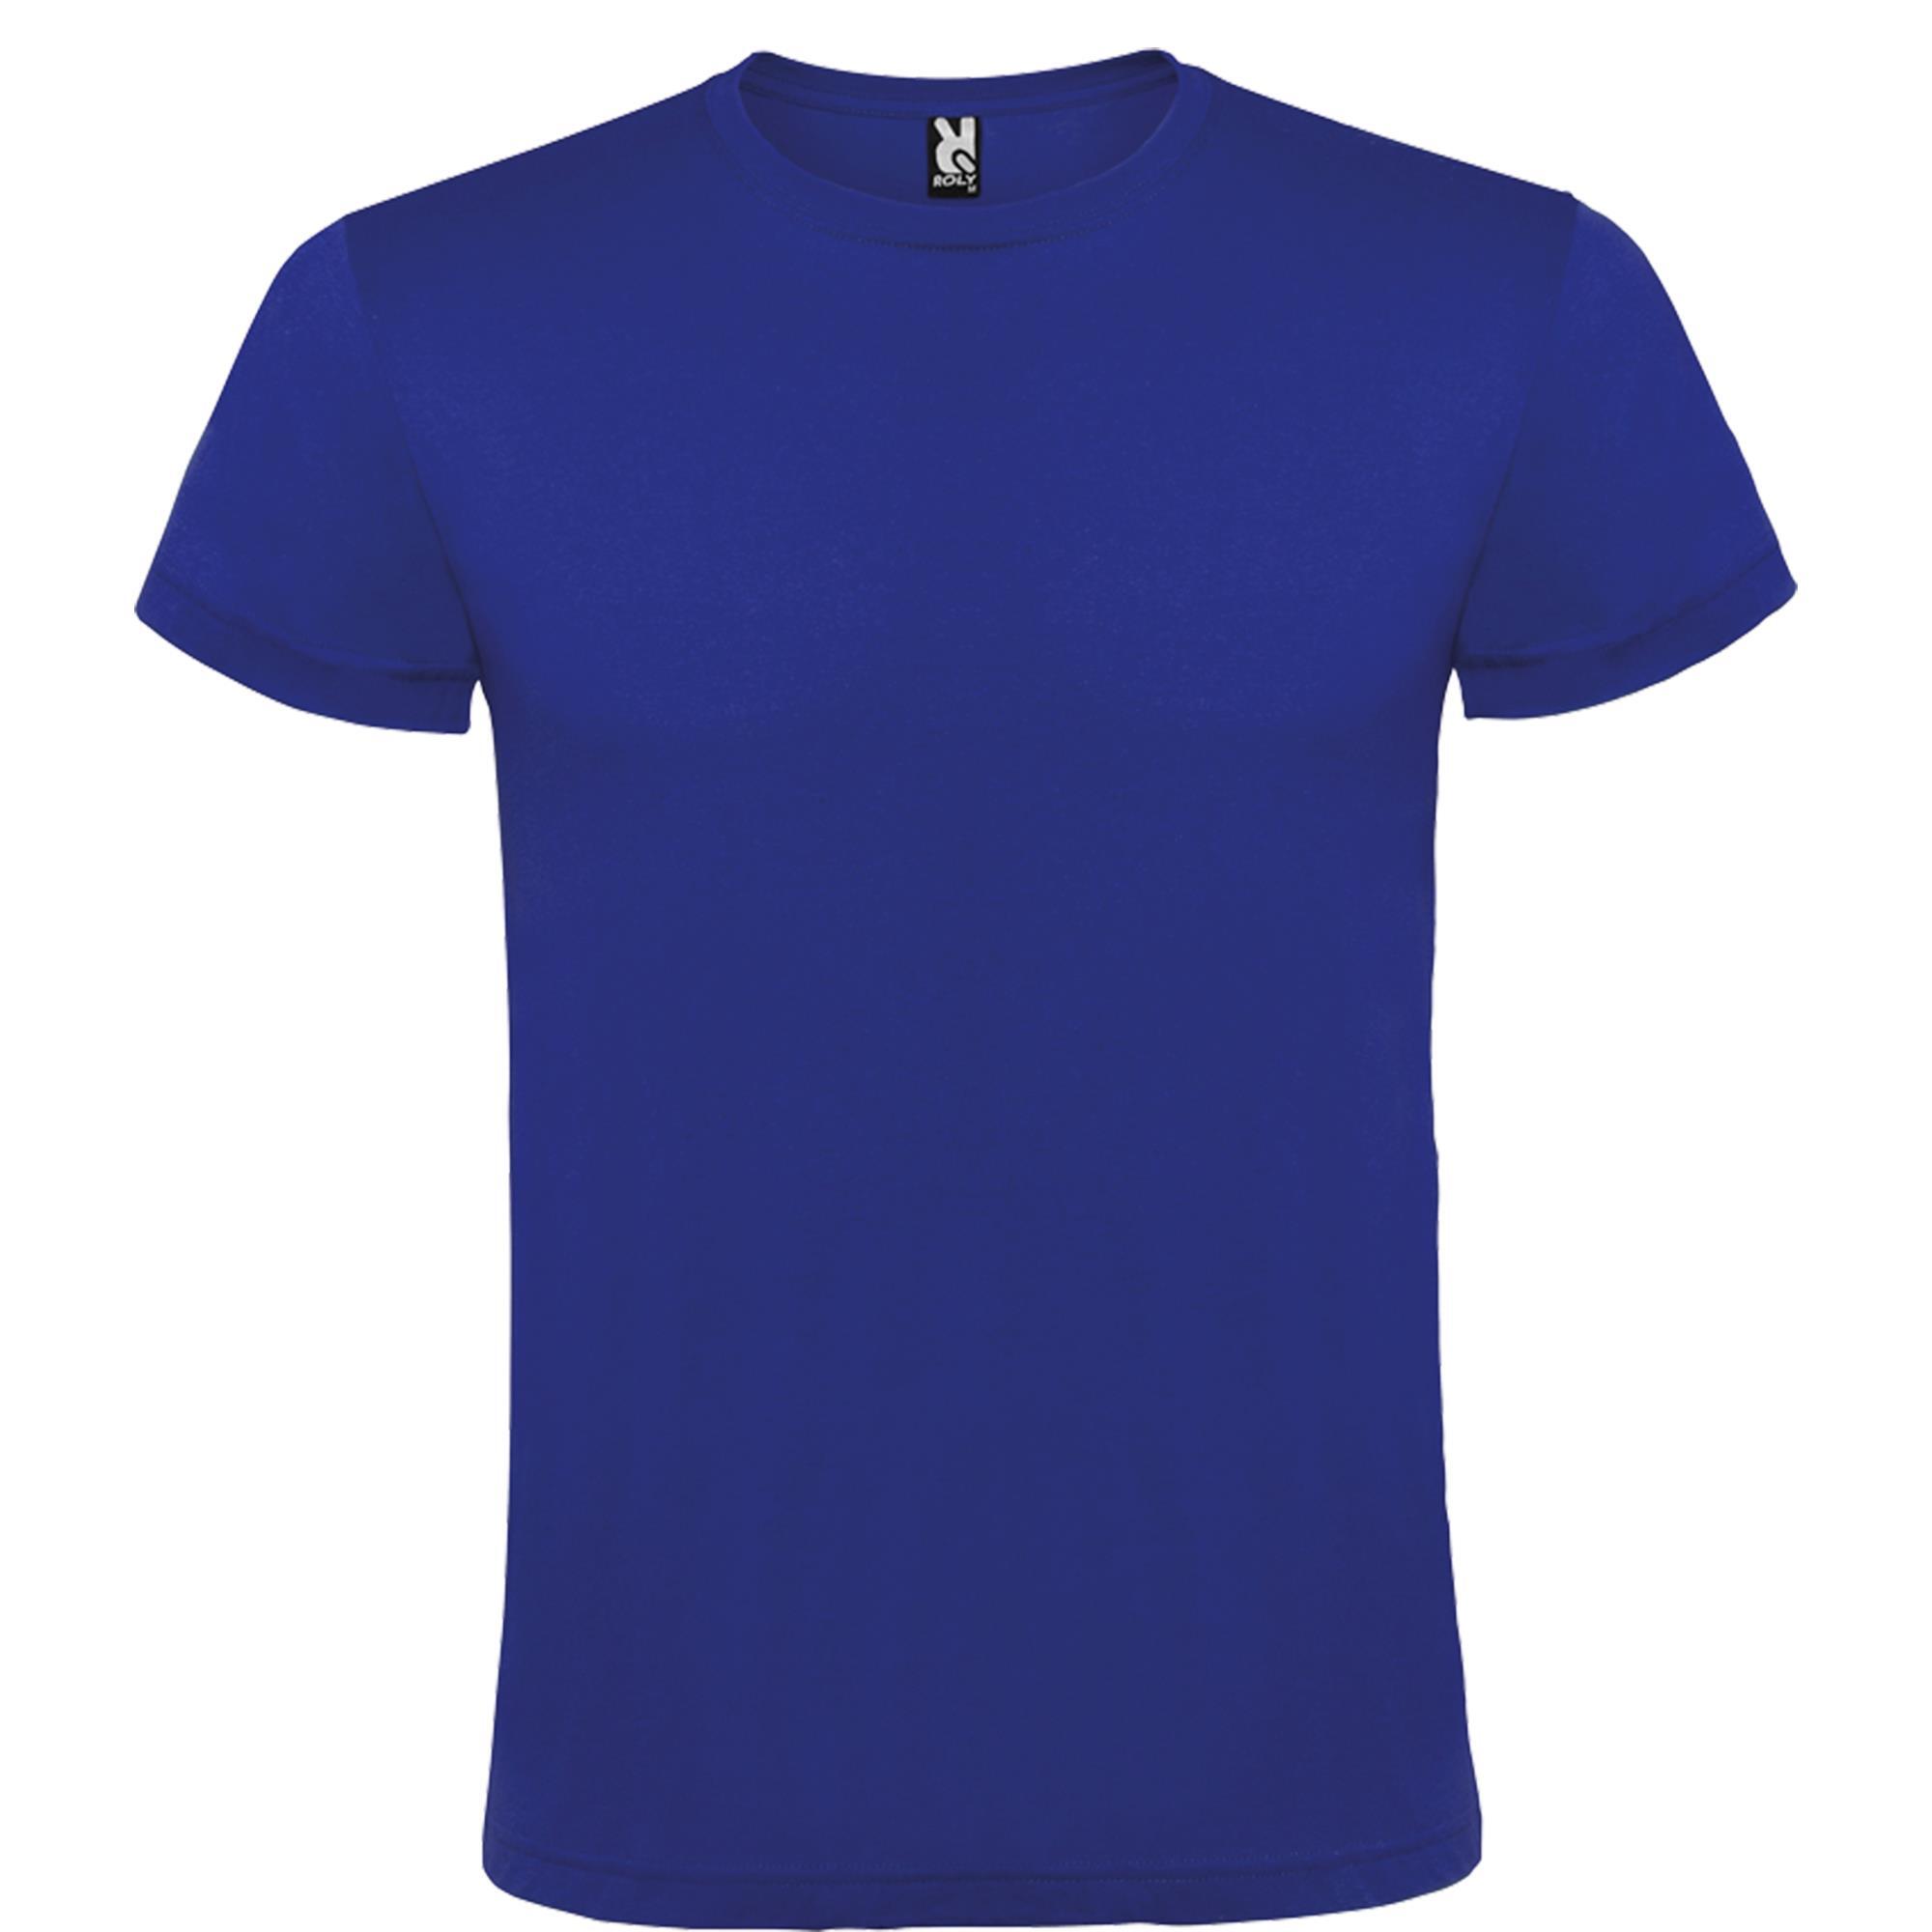 Rondgebreide T-shirt unisex voor volwassen royal blauw personalisatie mogelijk